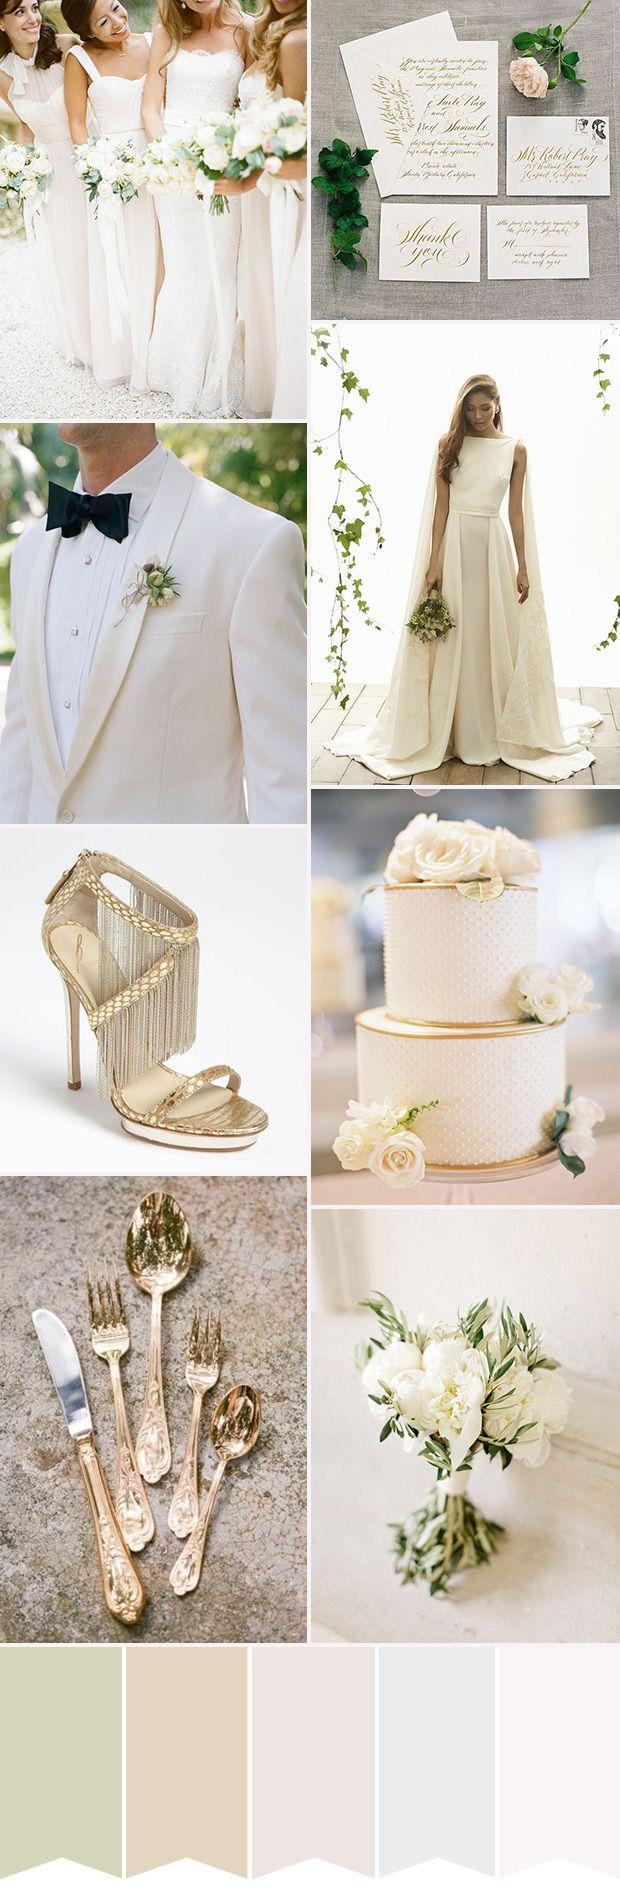 Wedding - The Ultimate Glam: White Wedding Inspiration